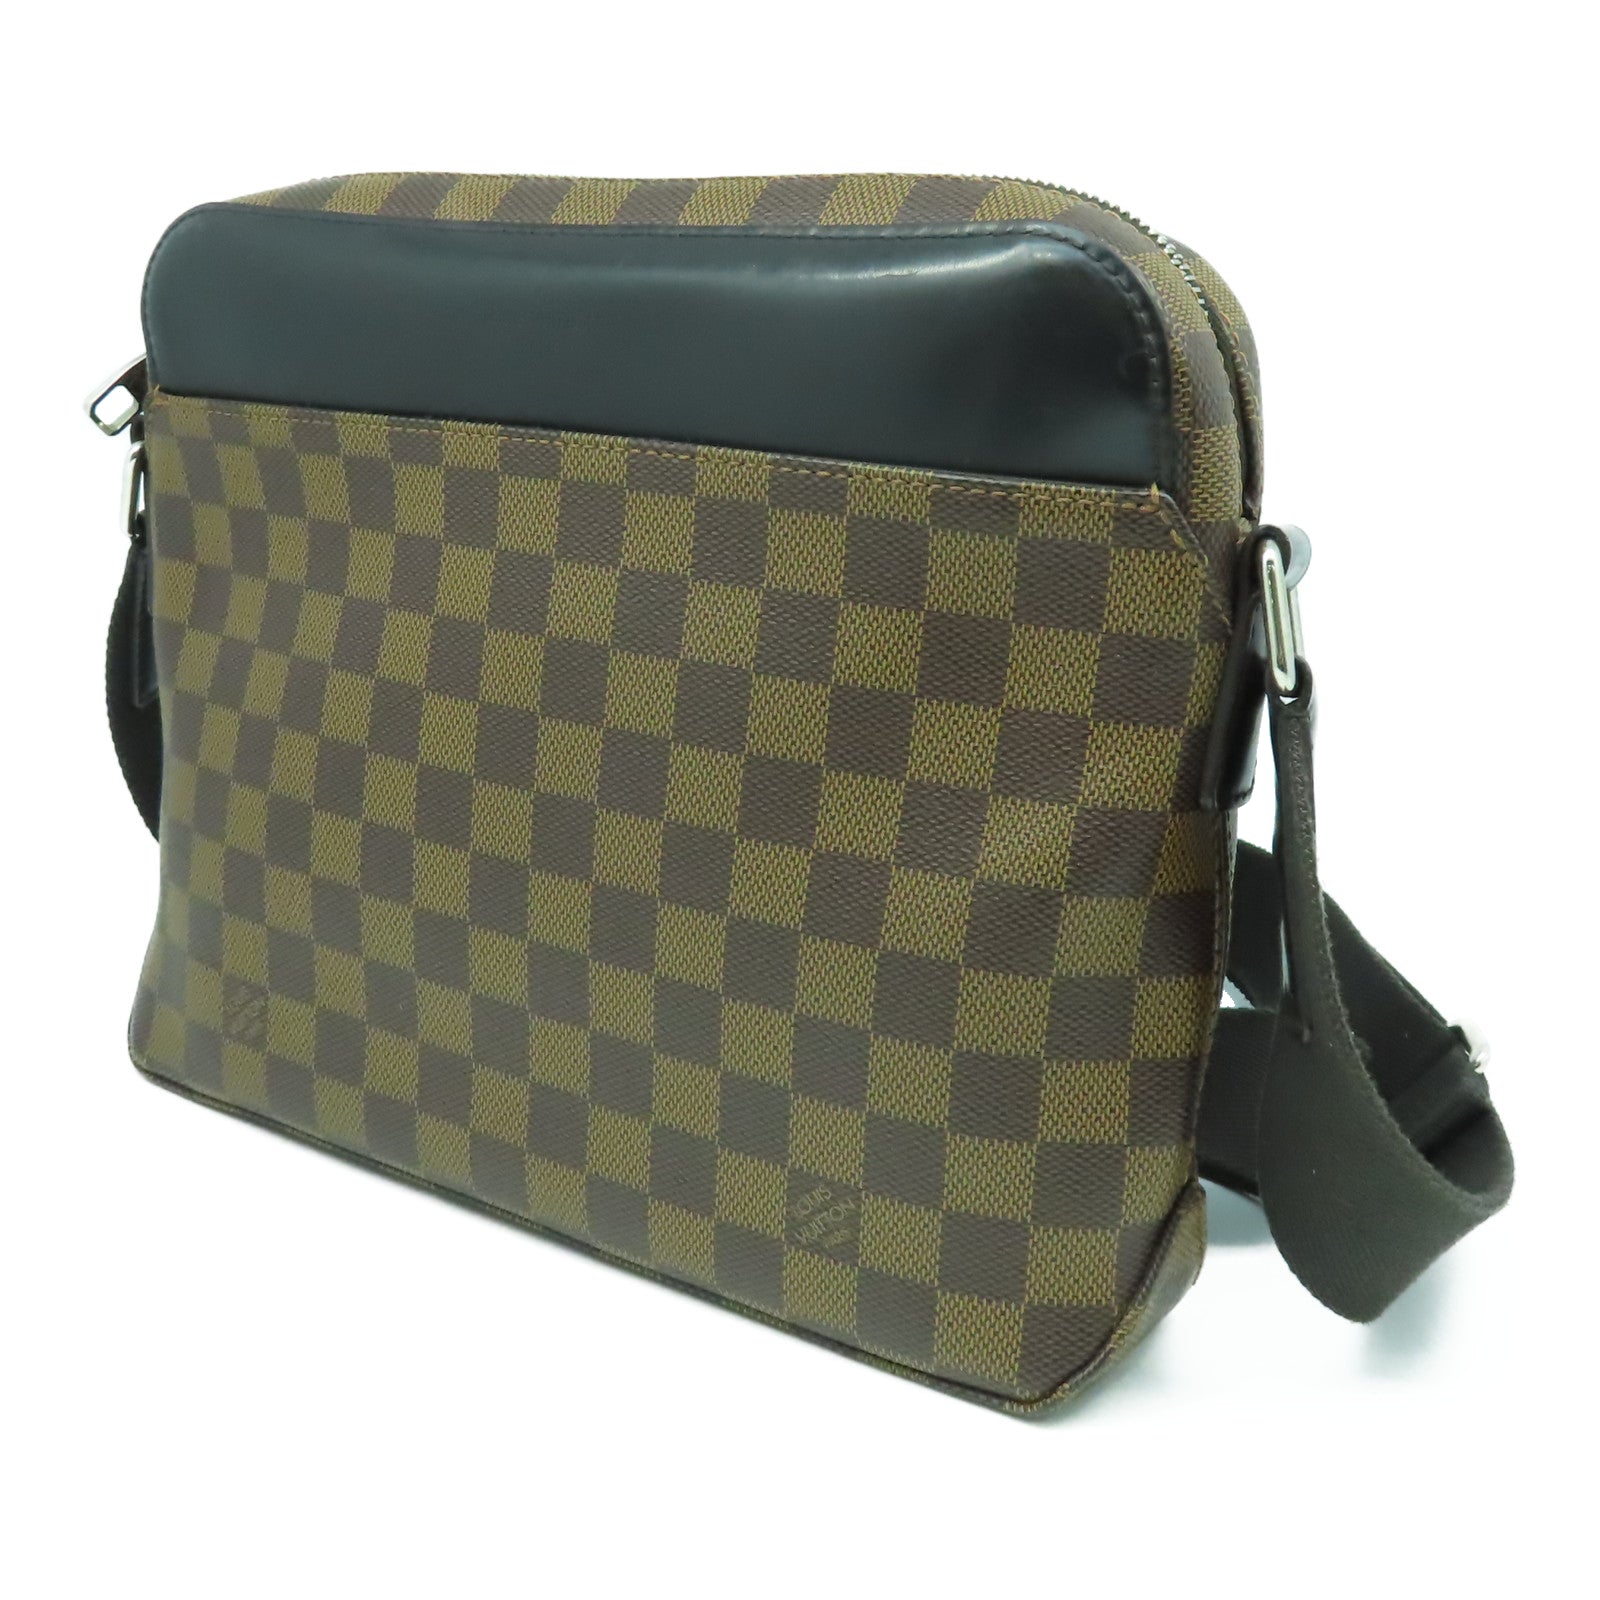 Louis Vuitton Jake Messenger Bag Damier Pm